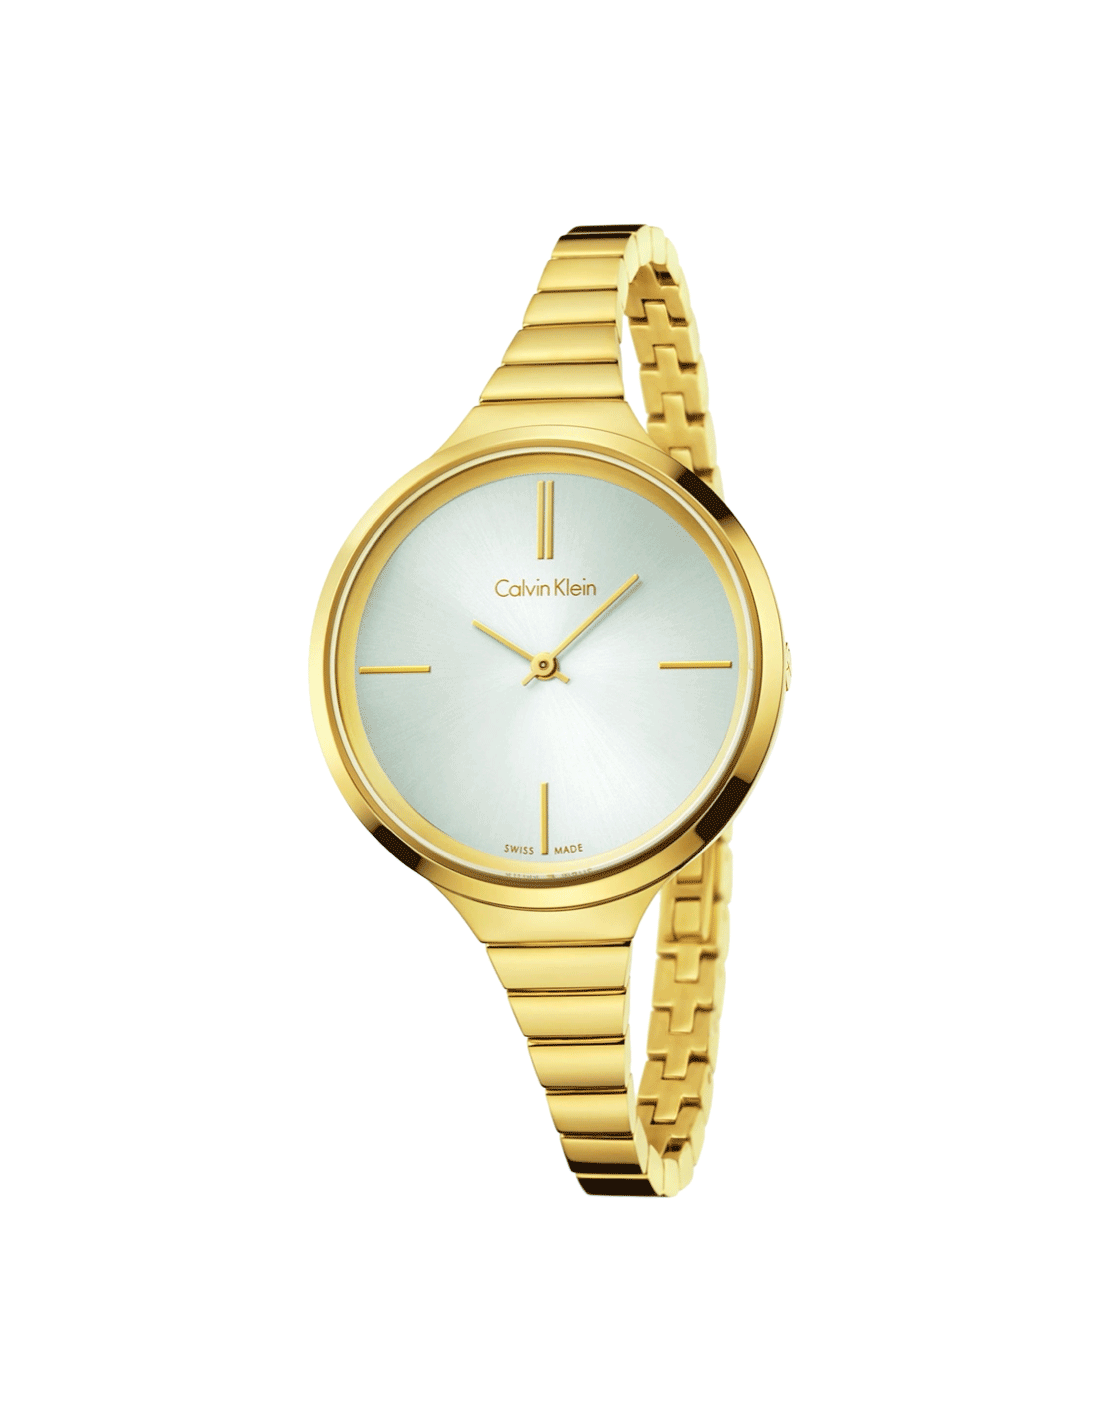 K4U23526 - Calvin Klein Watches